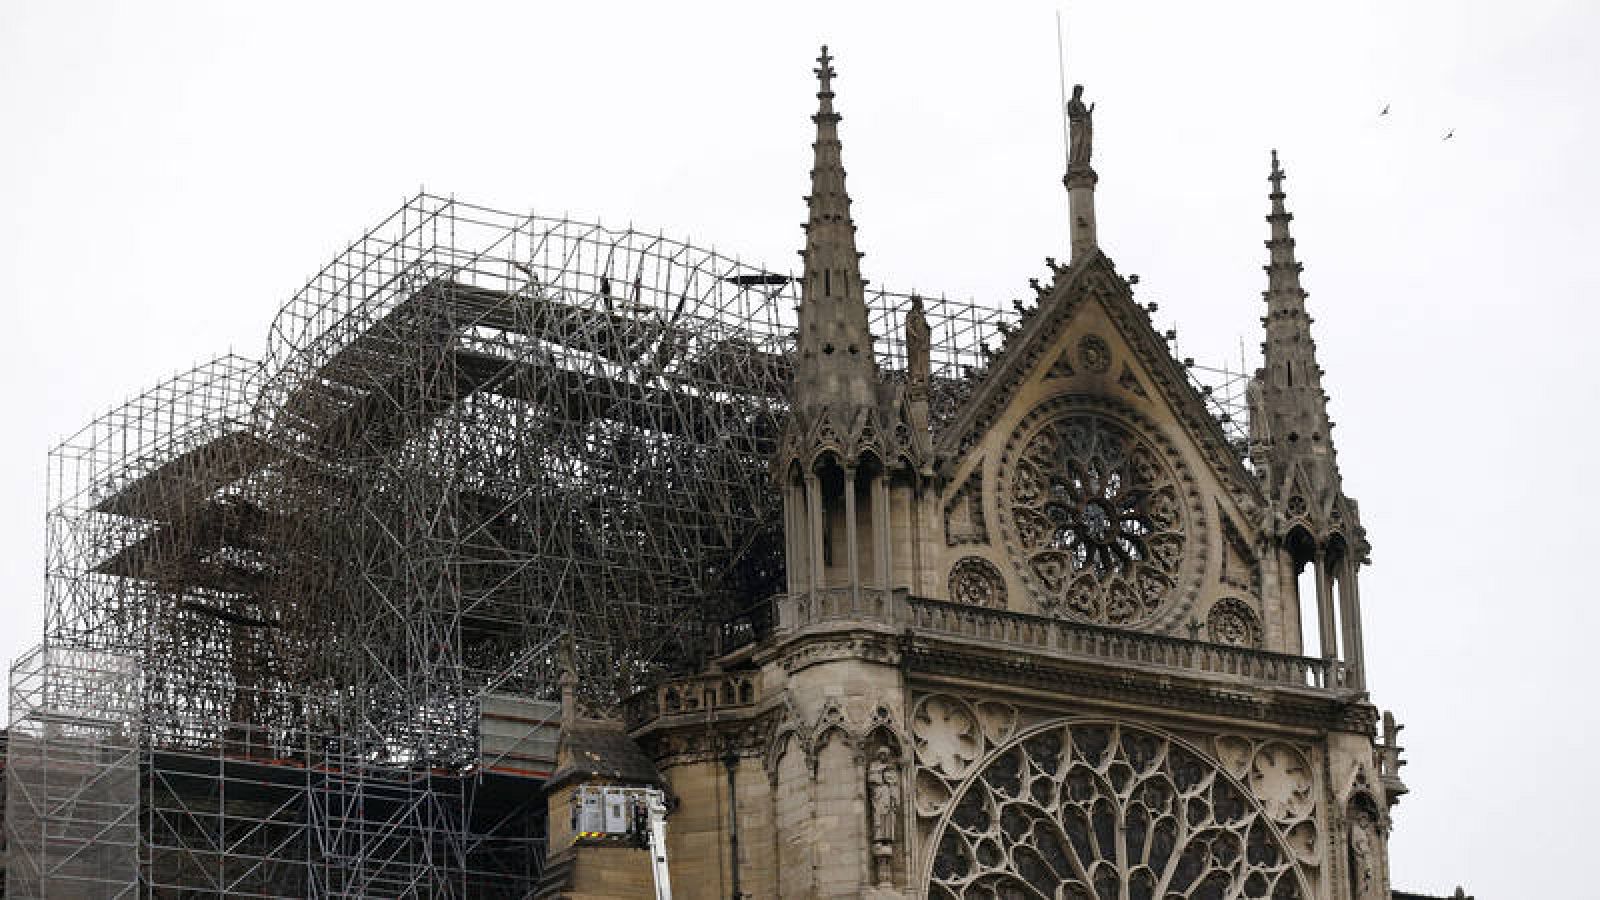 Vista de parte de la estructura la catedral de Notre Dame afectada por un incendio en París Francia 